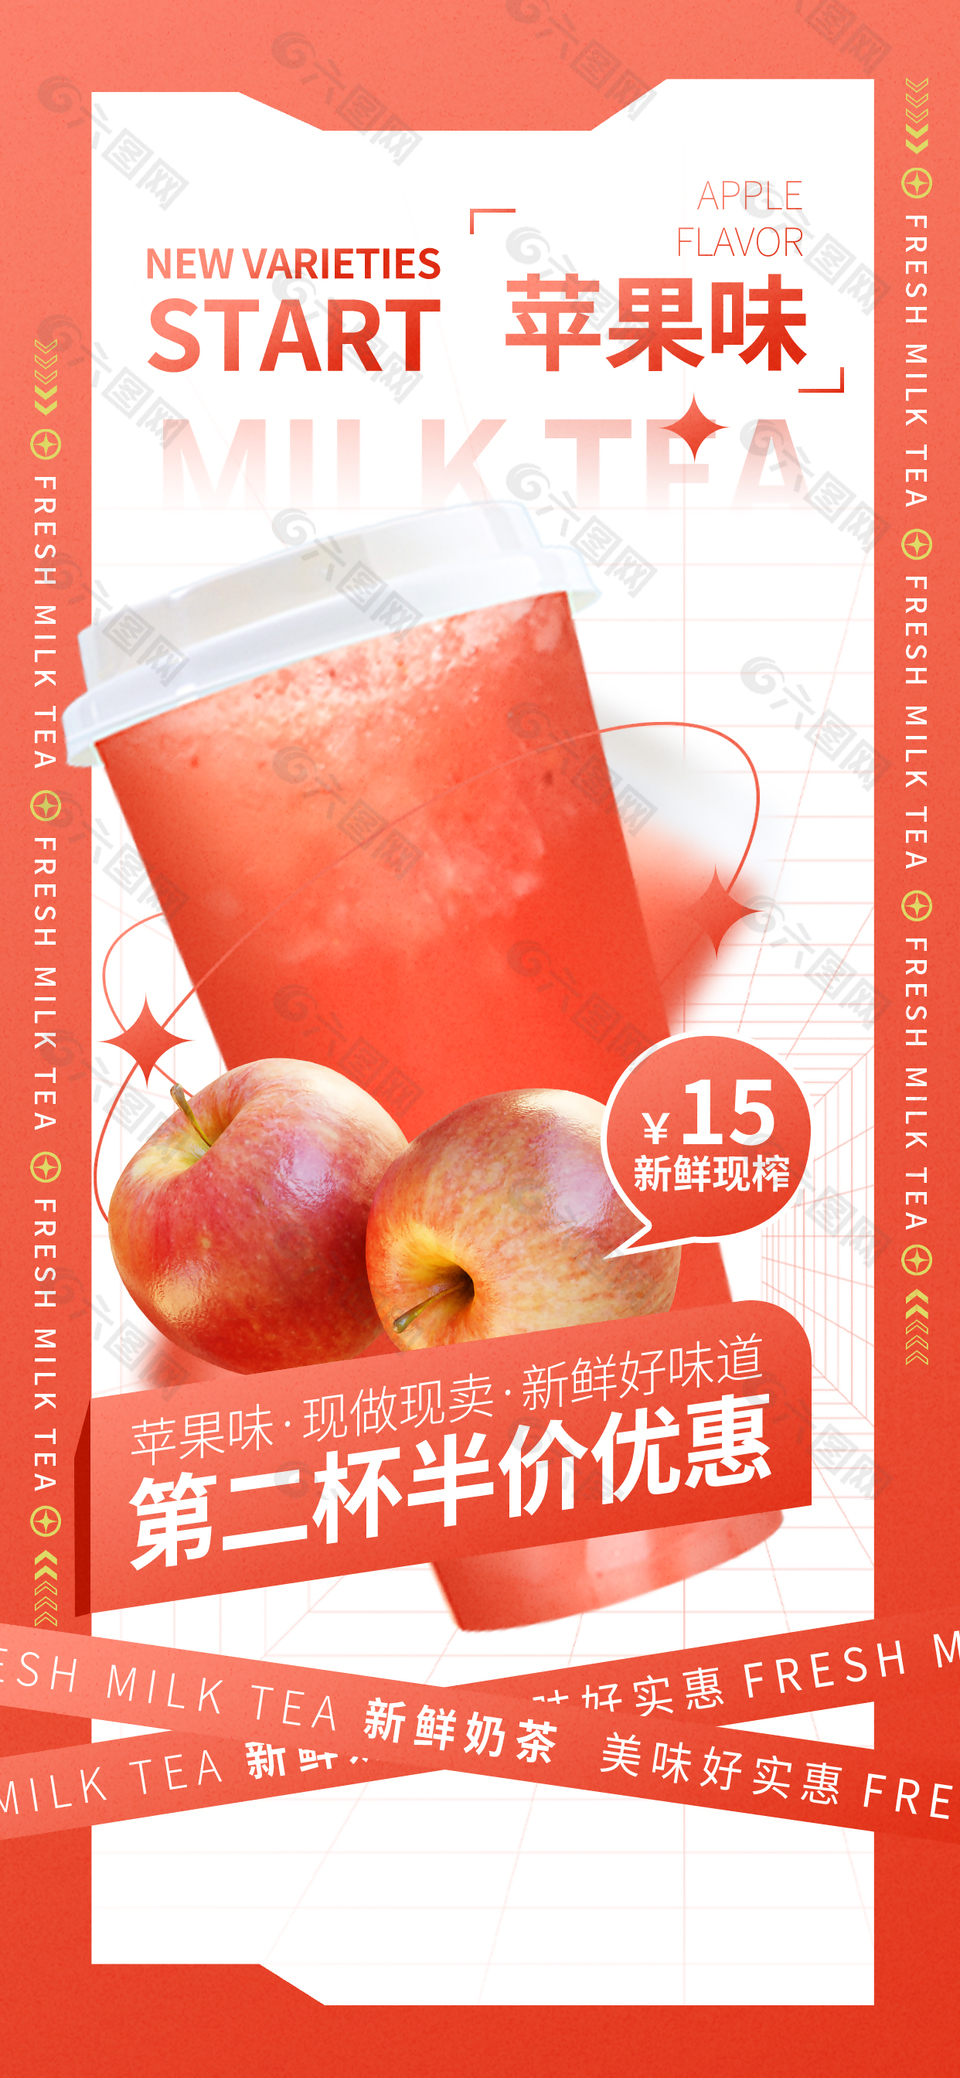 苹果味奶茶新鲜优惠活动宣传海报素材